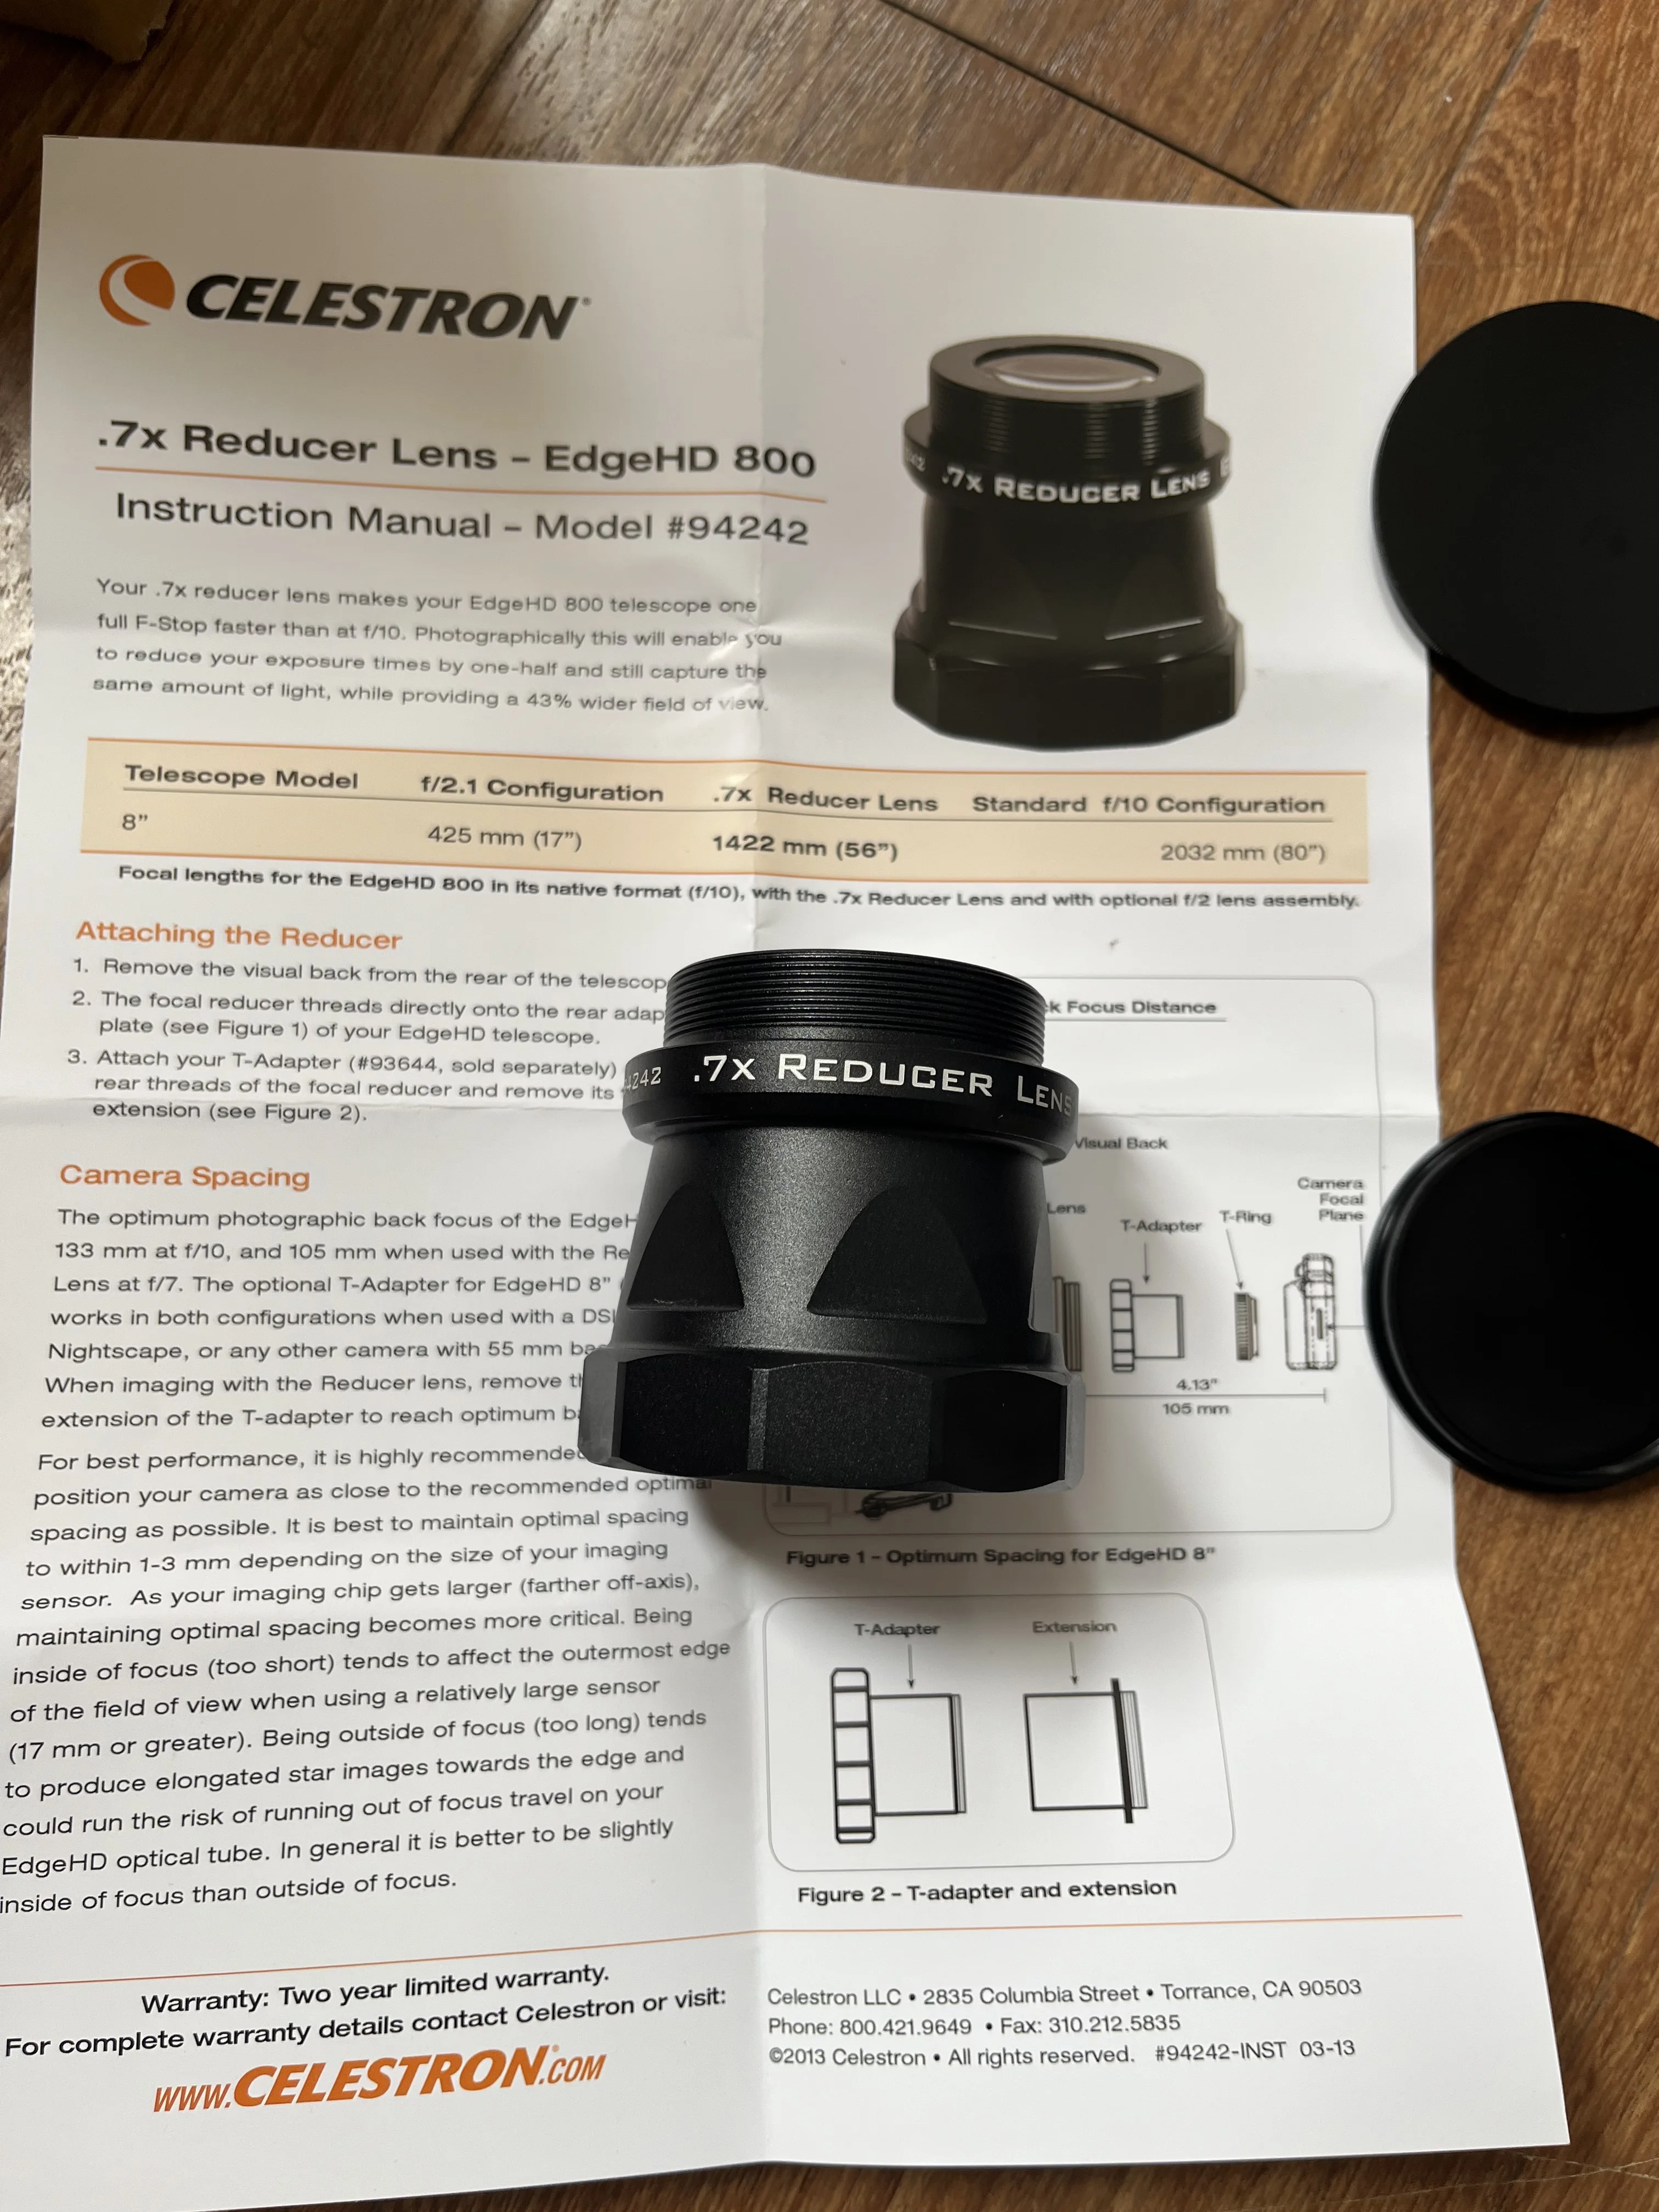 Celestron Reducer Lens For EdgeHD 800 Telescope #94242